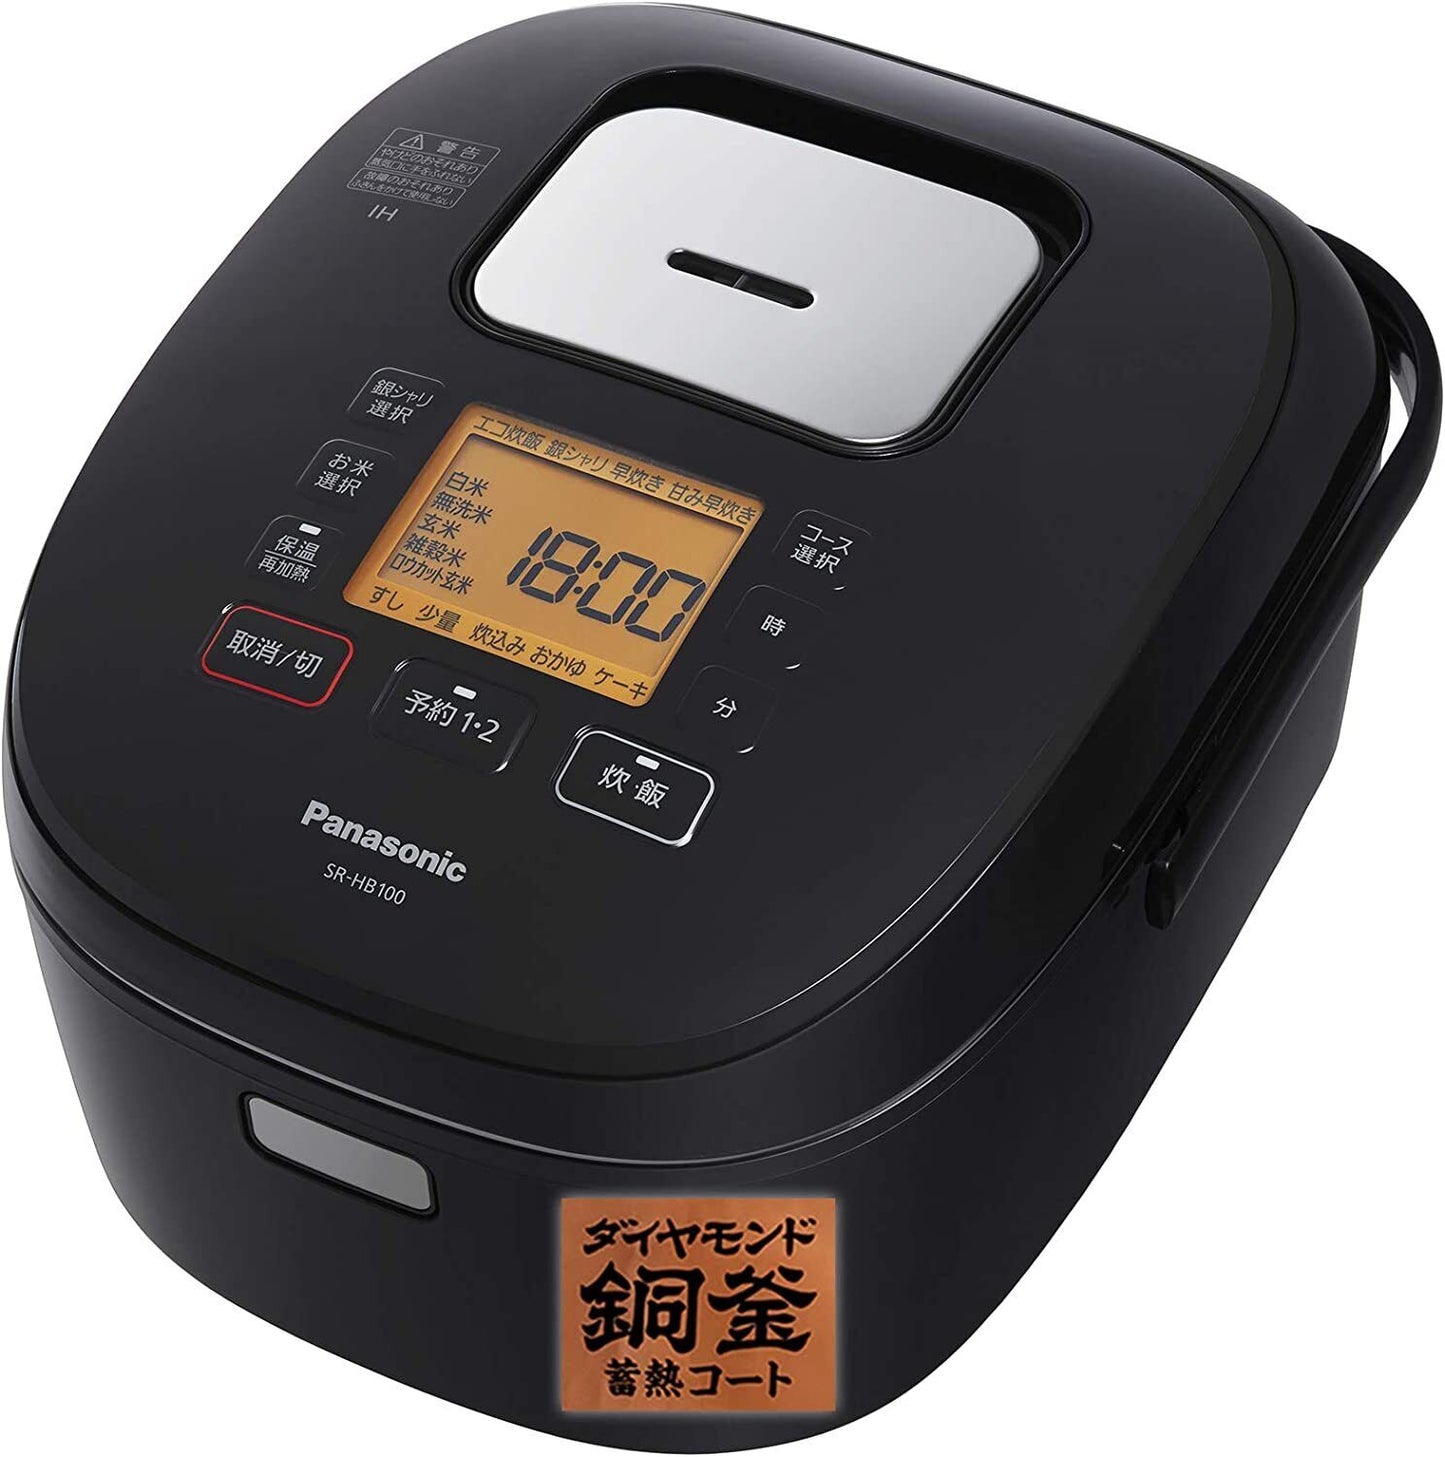 SR-HB100-K Panasonic rice cooker 5.5 go IH type black SR-HB100-K AC100V